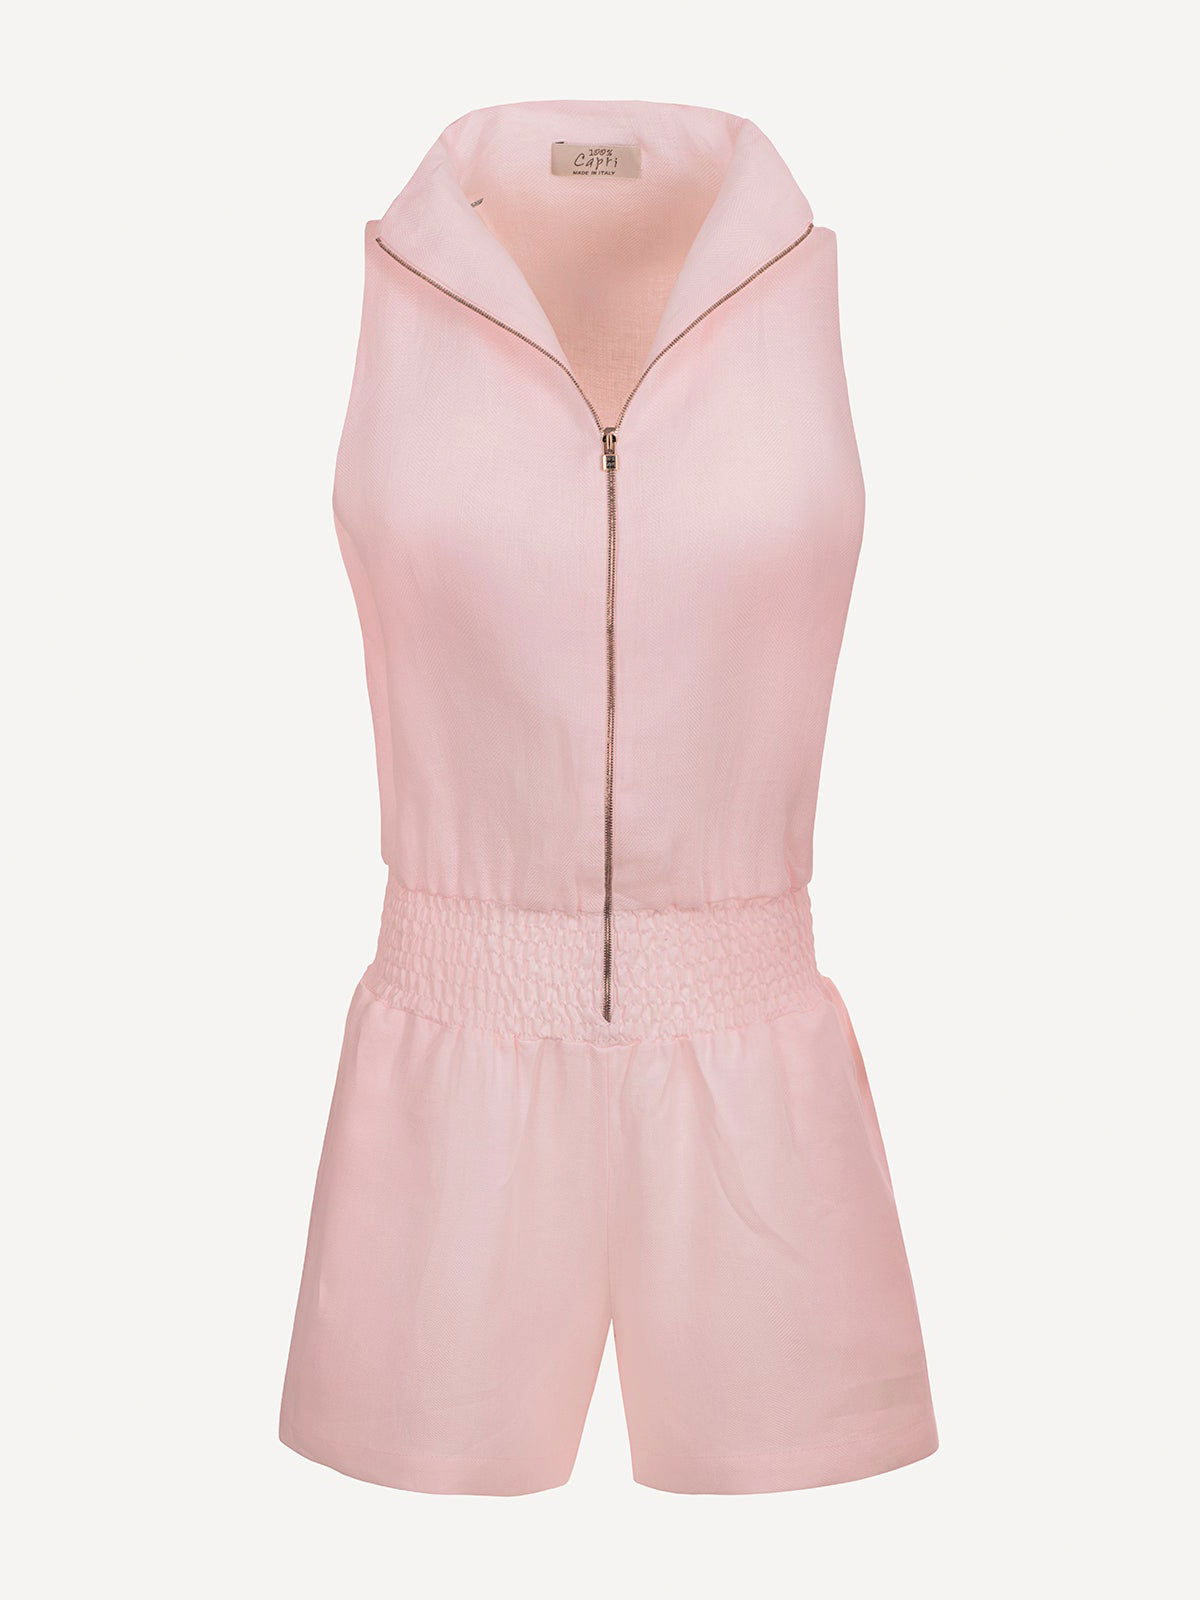 Tuta Zip  for woman  100% Capri pink linen jumpsuit front